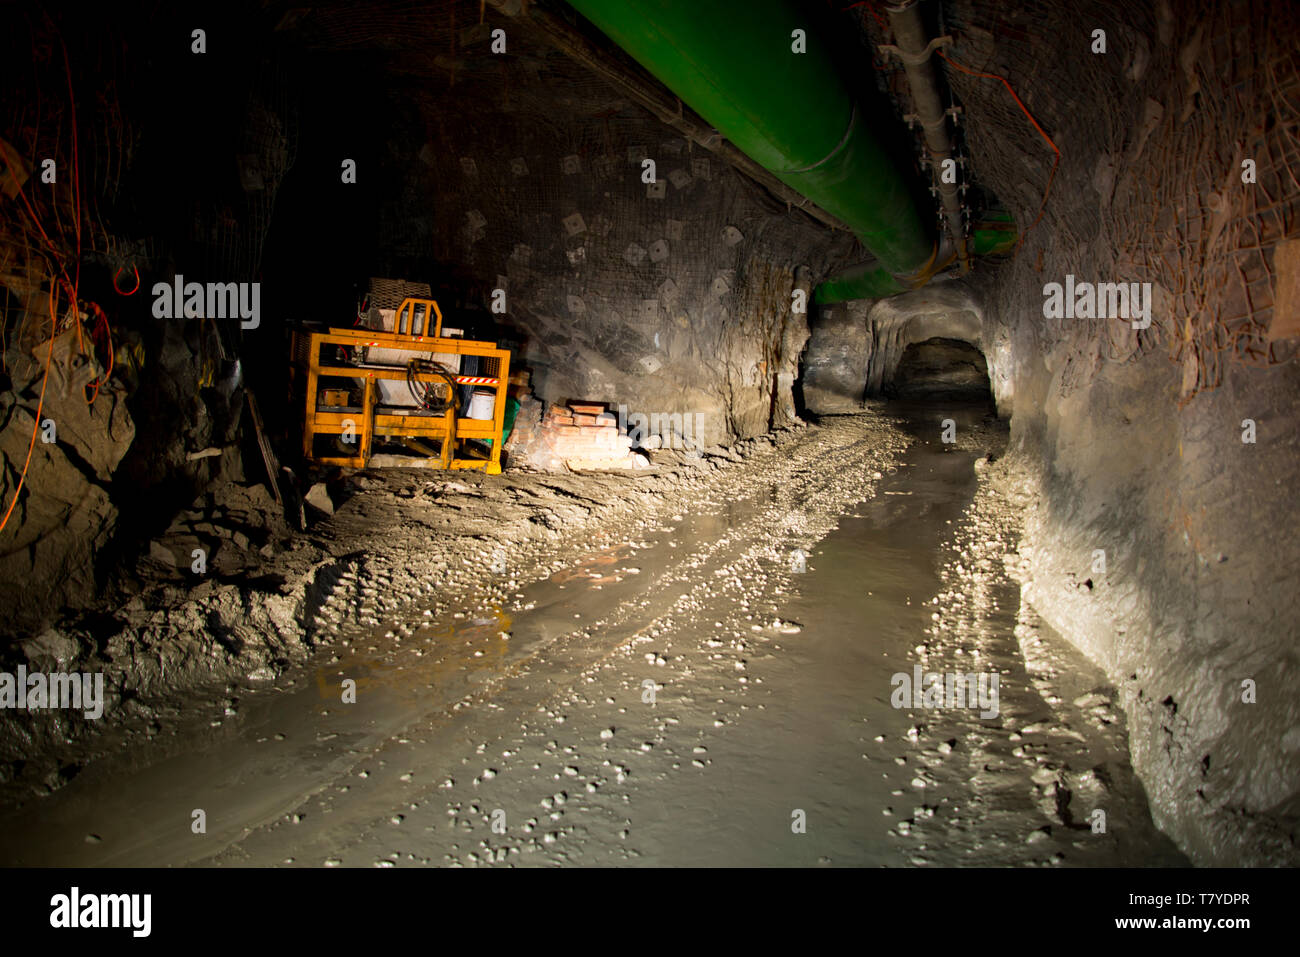 La metropolitana in galleria mineraria Foto Stock